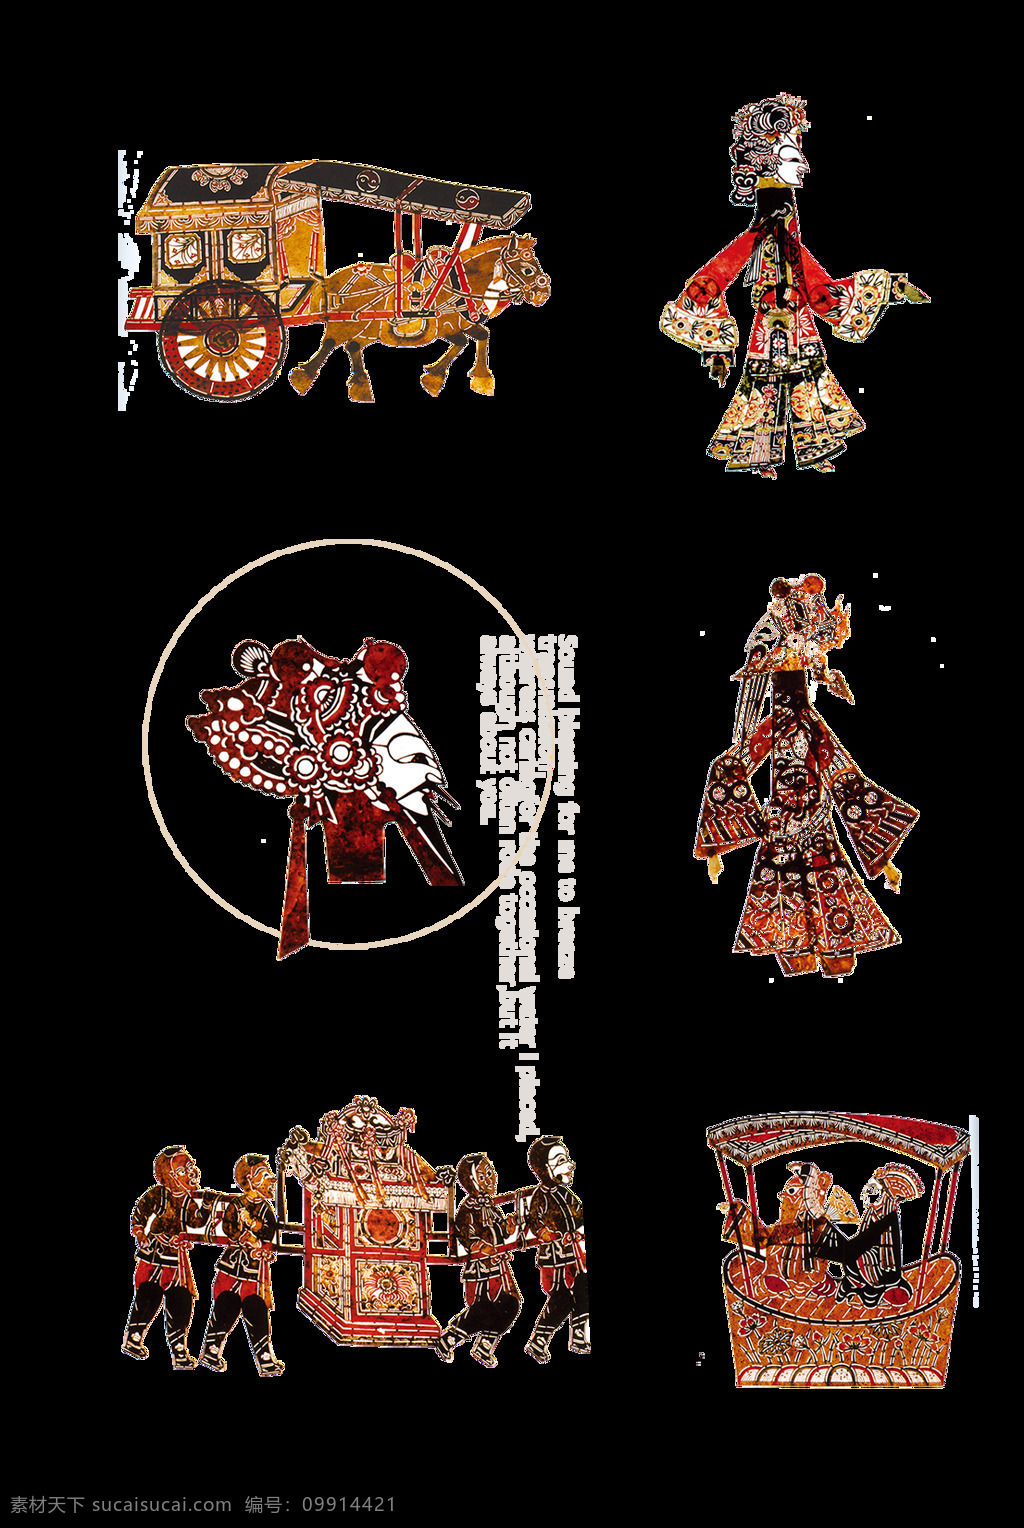 皮影戏 人物 形象设计 皮影 中国传统文化 中国传统 传统皮影 皮影素材 免扣素材 剪纸 中国风 人物形象设计 创意 装饰图案